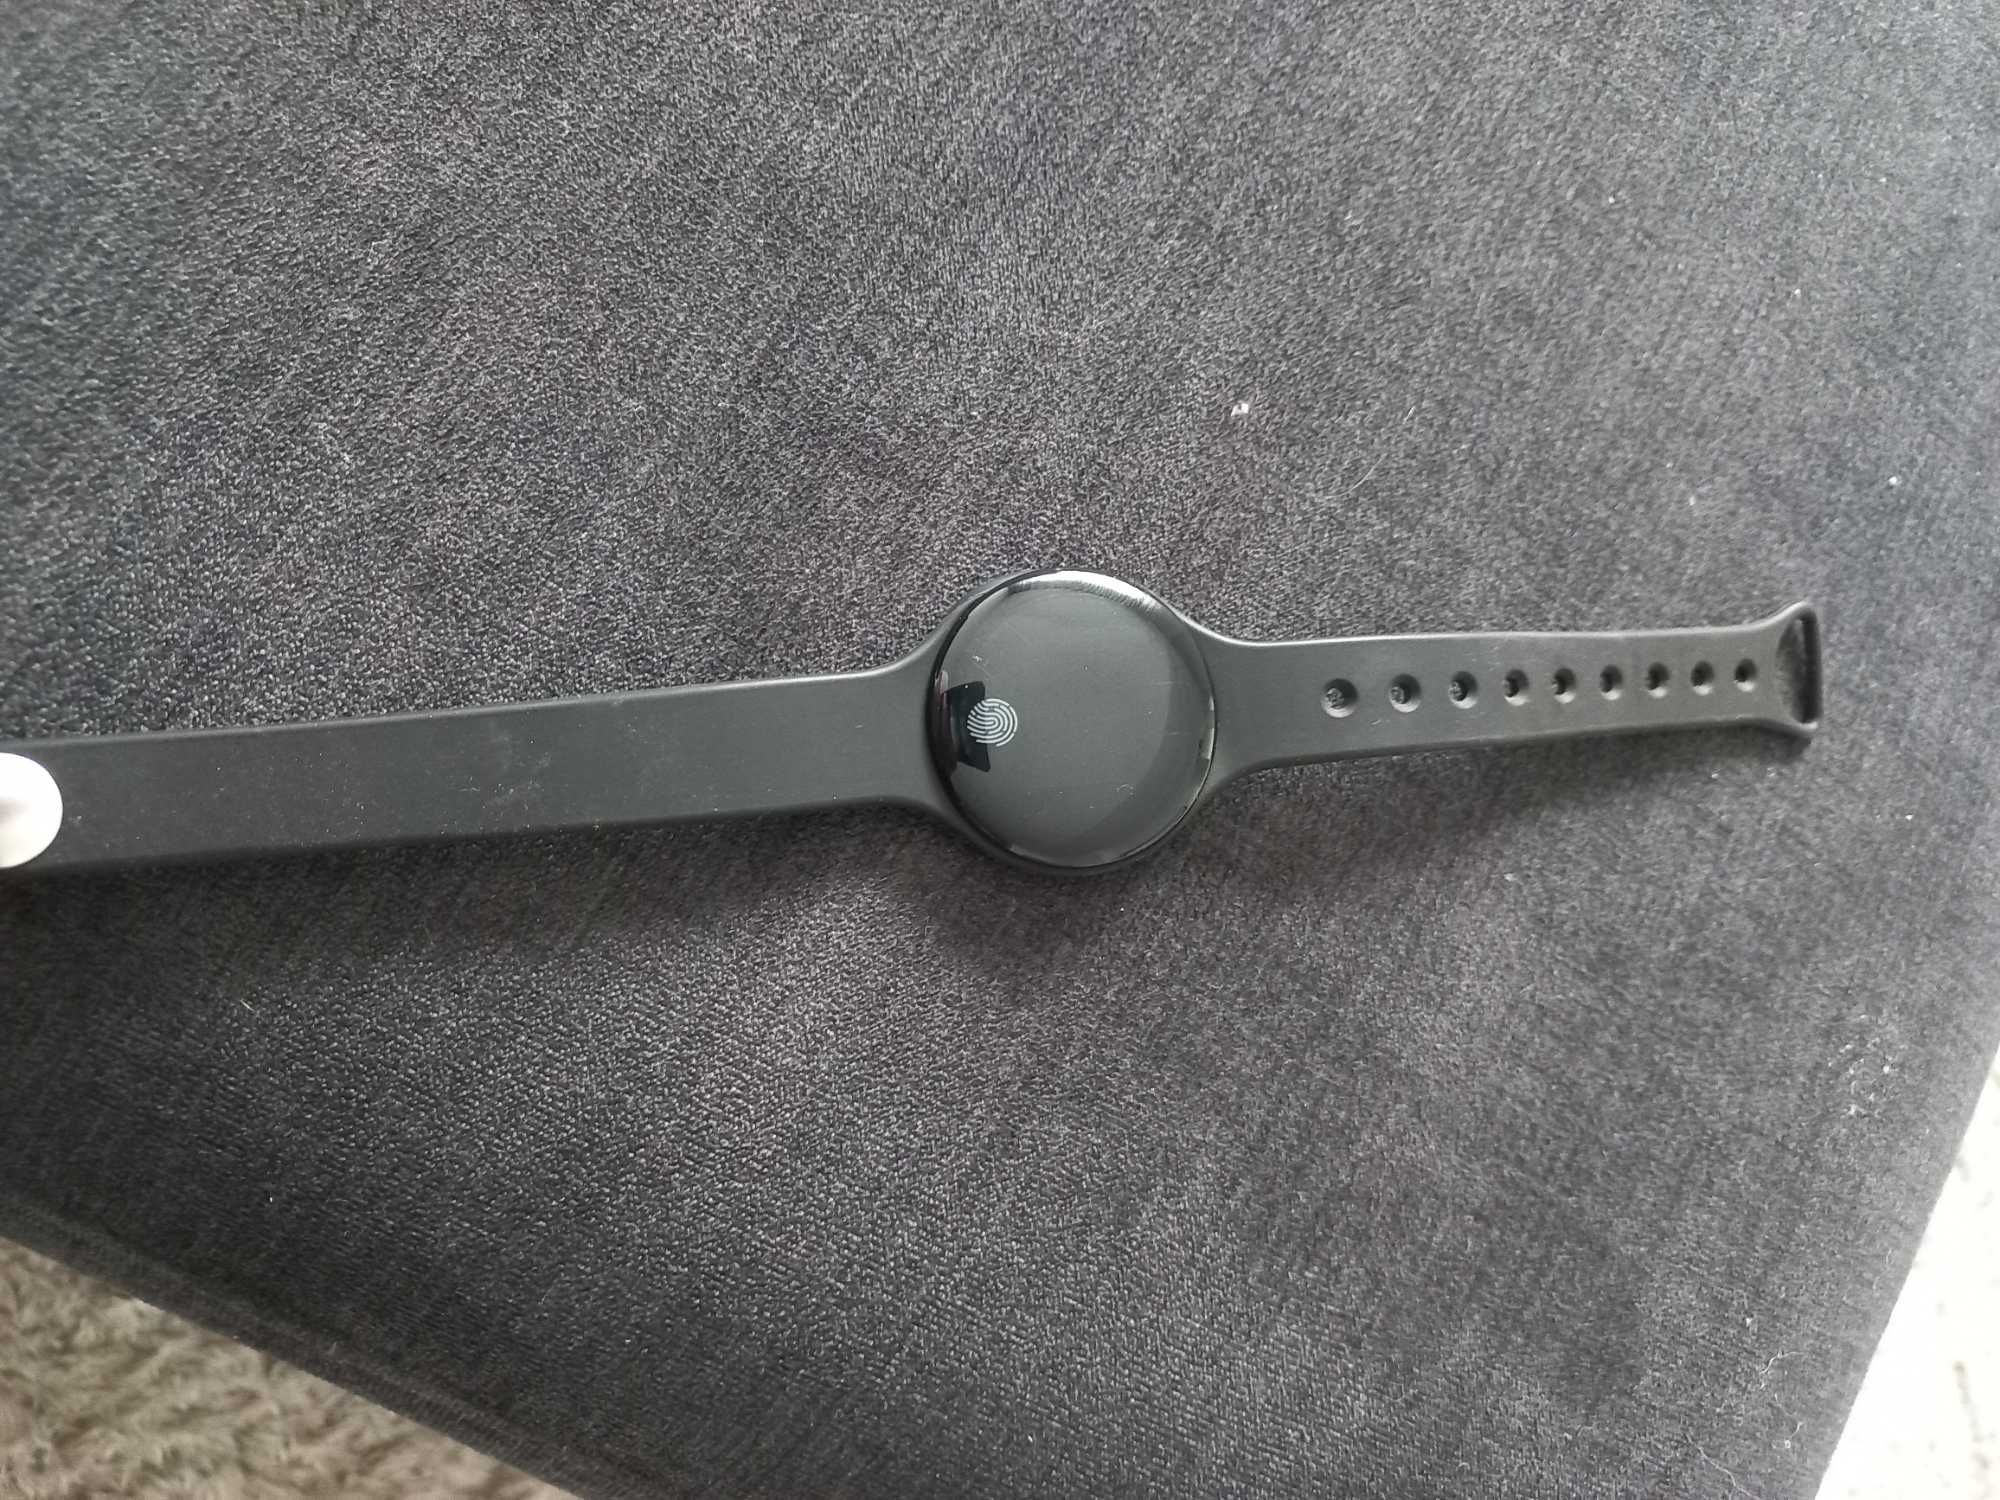 Vendo smart bracelet como novo em caixa